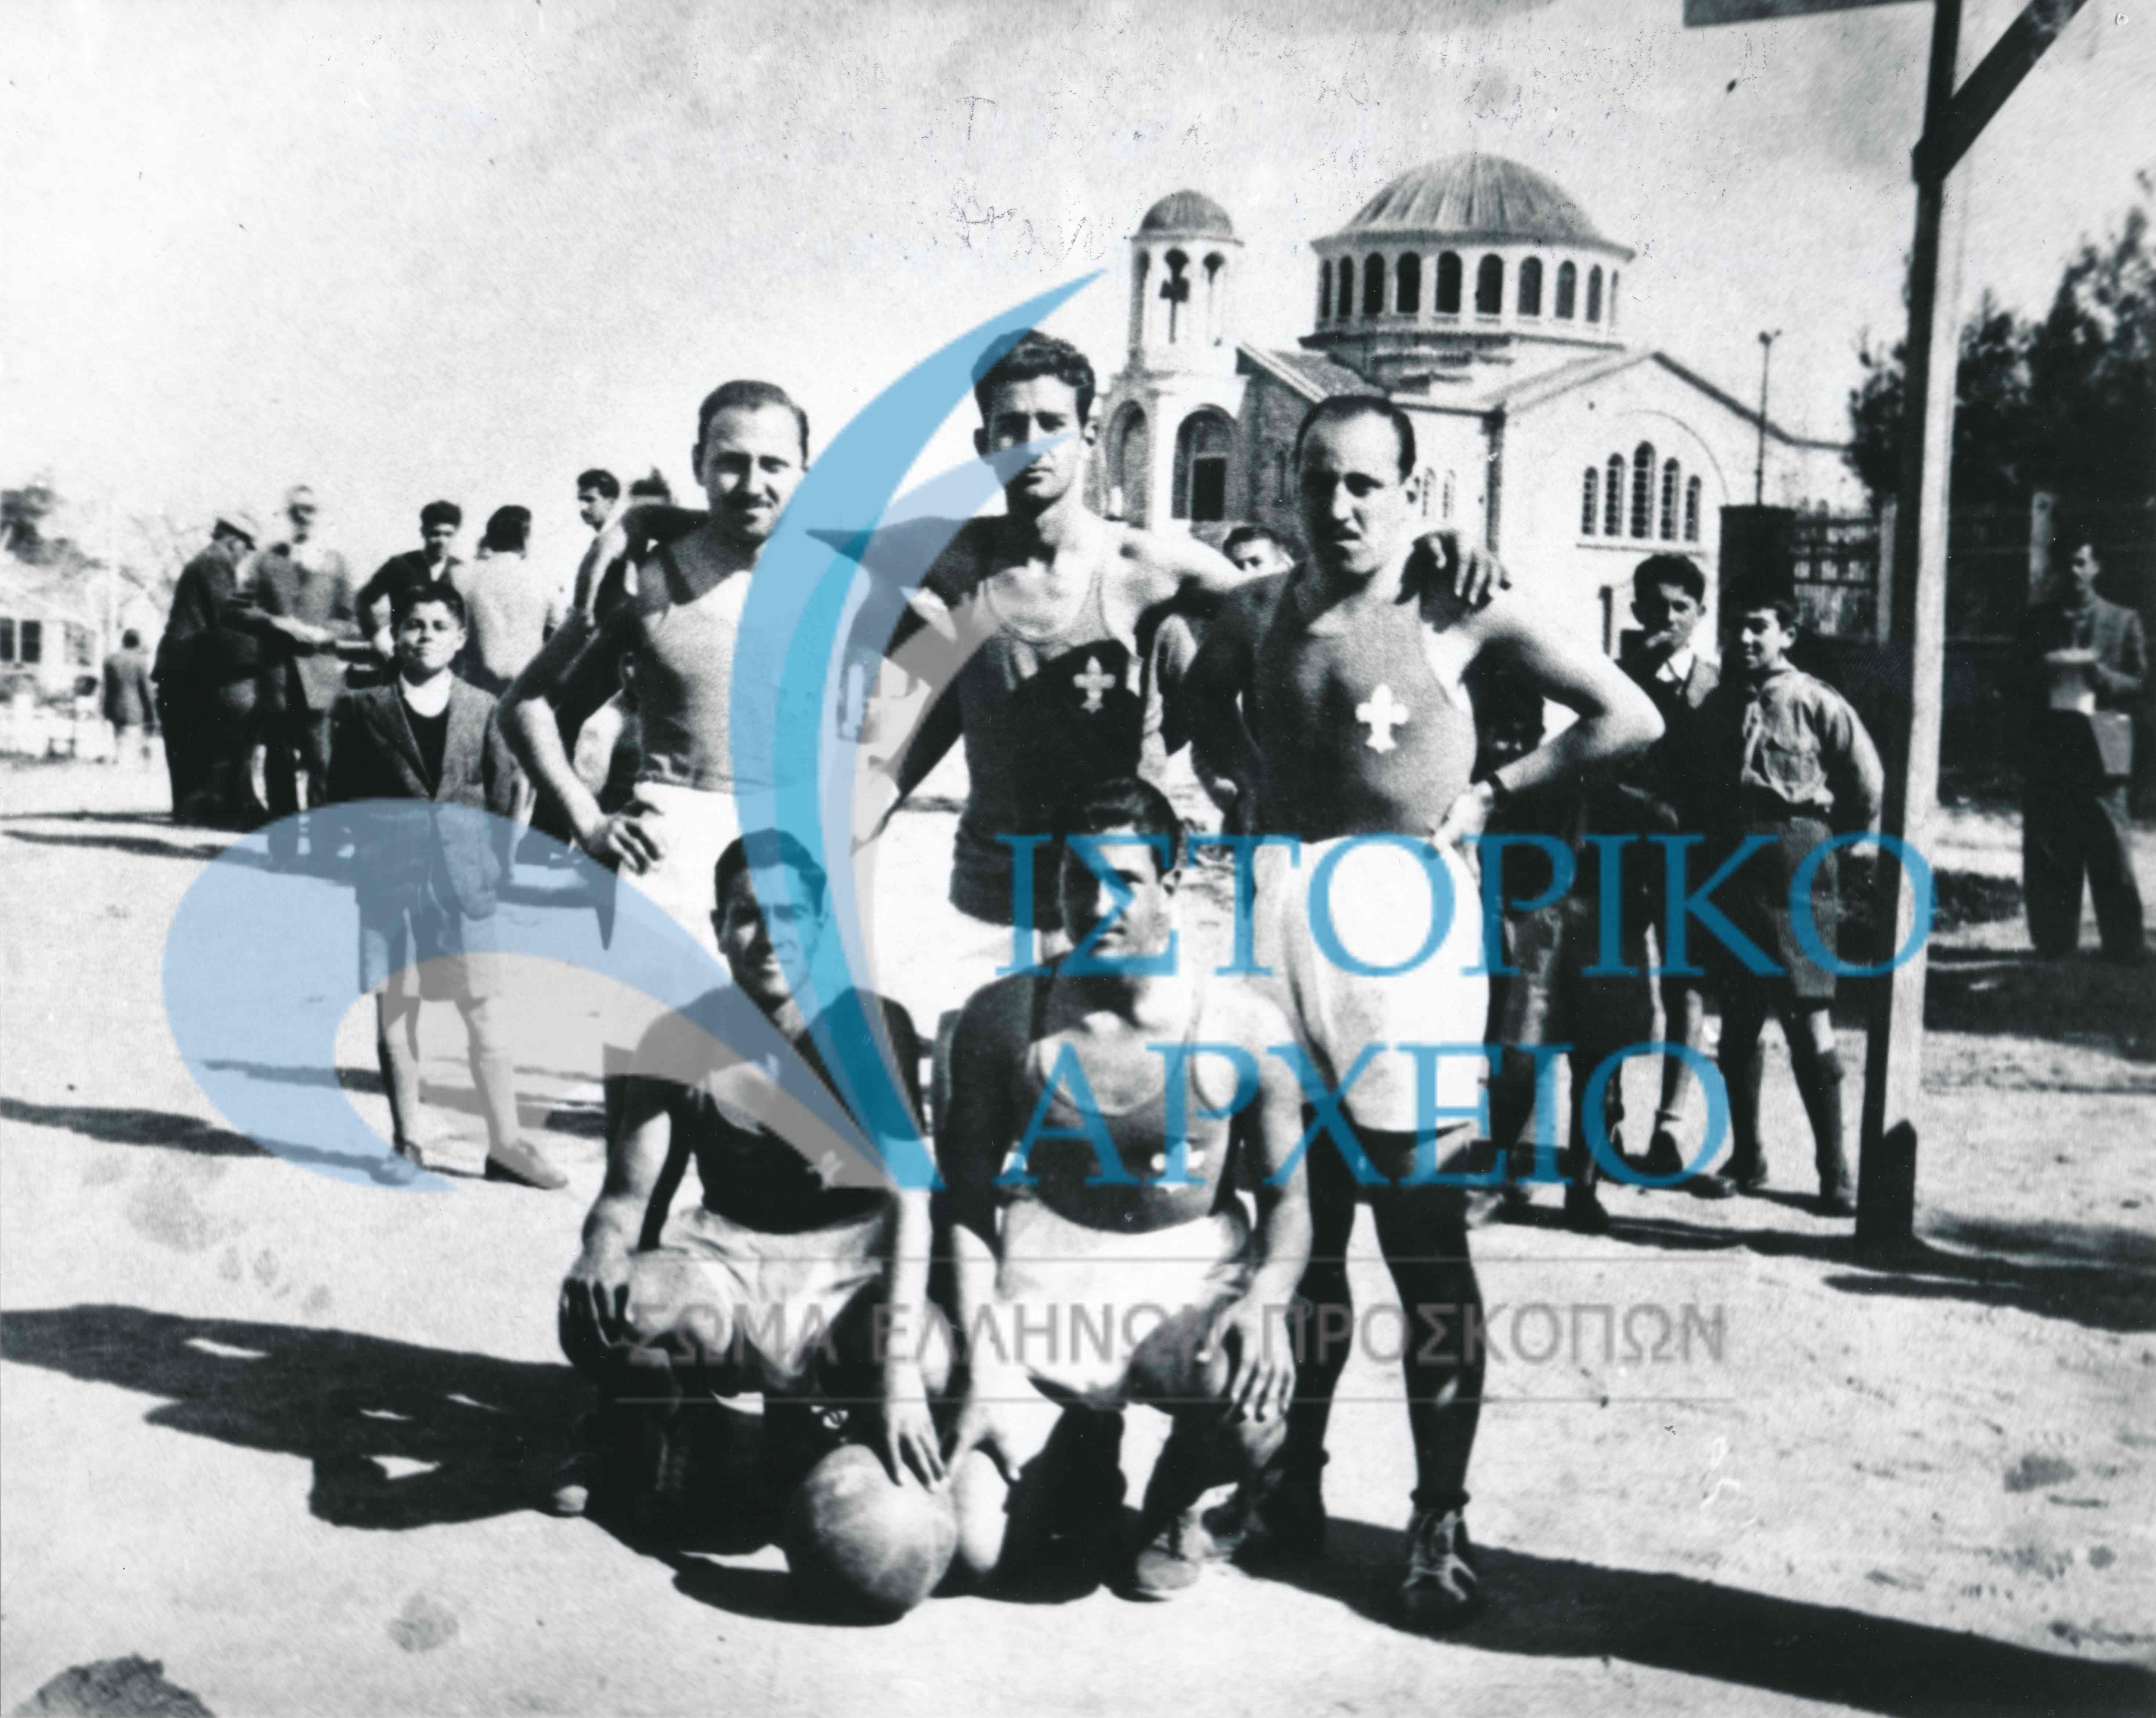 Η προσκοπική ομάδα καλαθοσφαίρισης της Αγίας Παρασκευής το 1950. Δεξιά κάτω καθιστός ο Νικόλας Μπρατσιώτης. 